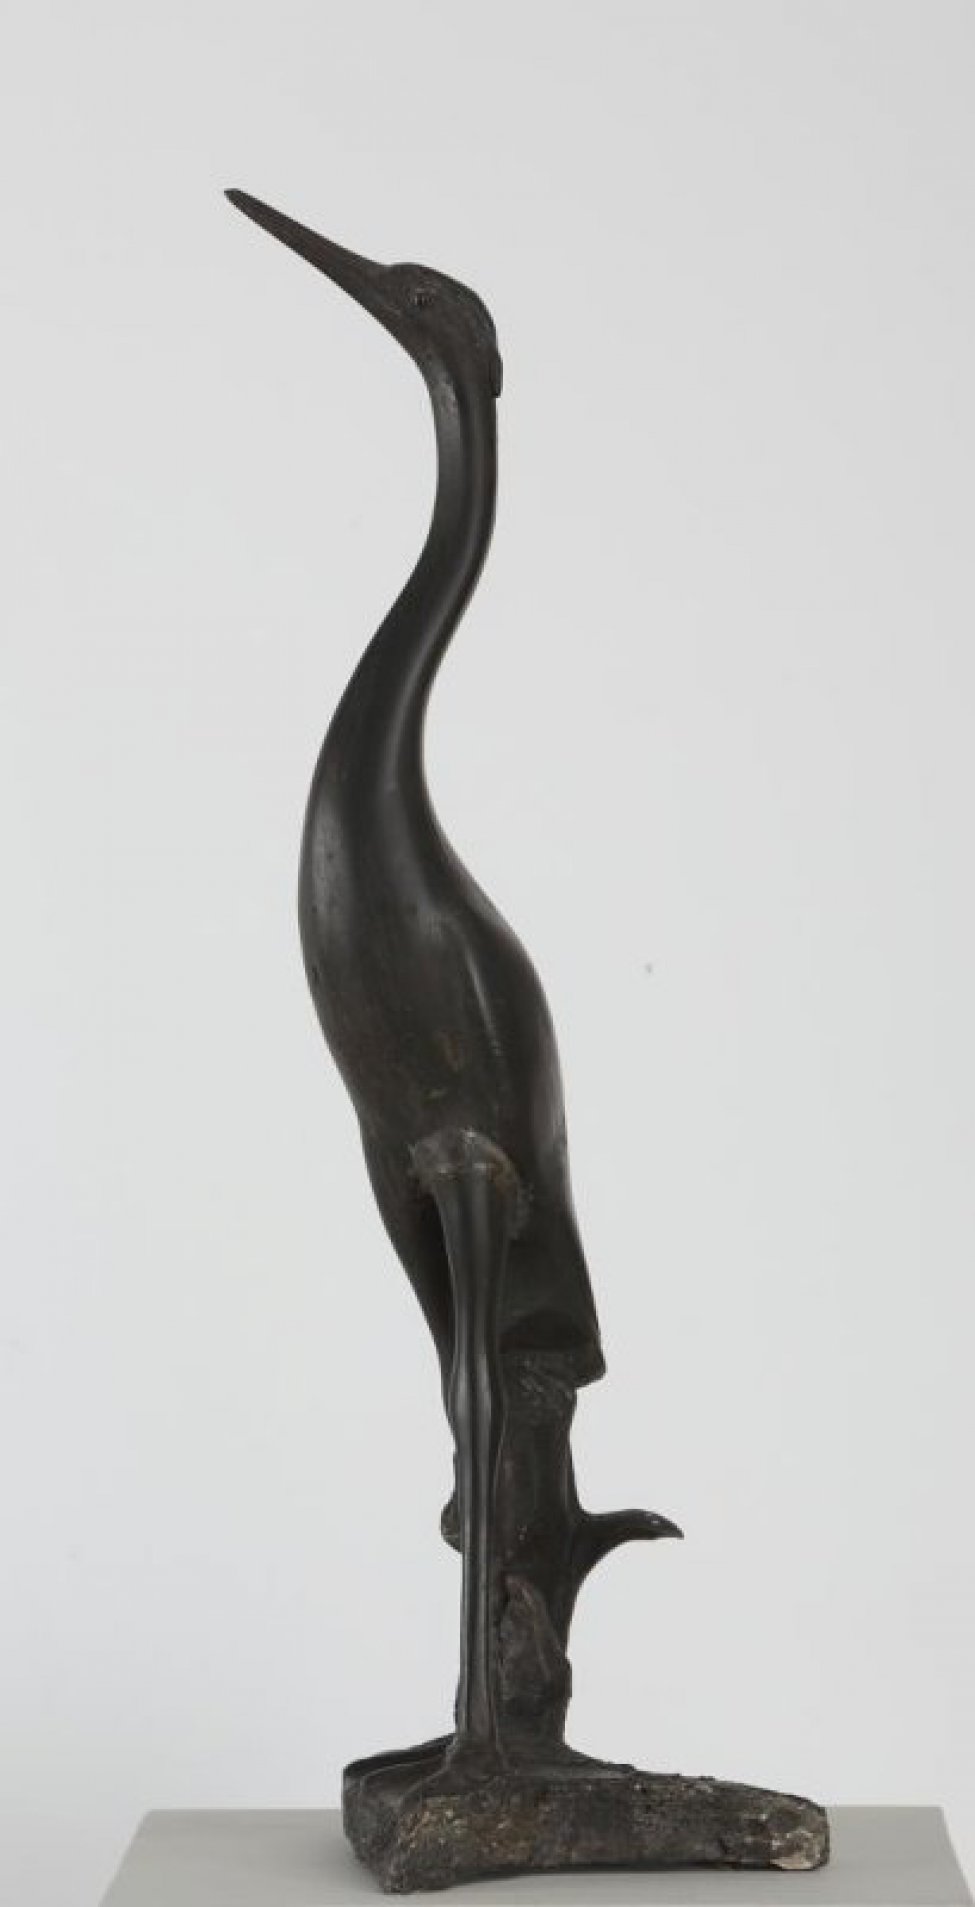 На плинте неправильной формы изображена стоящая черная цапля с длинной вытянутой шеей и поднятым вверх клювом.